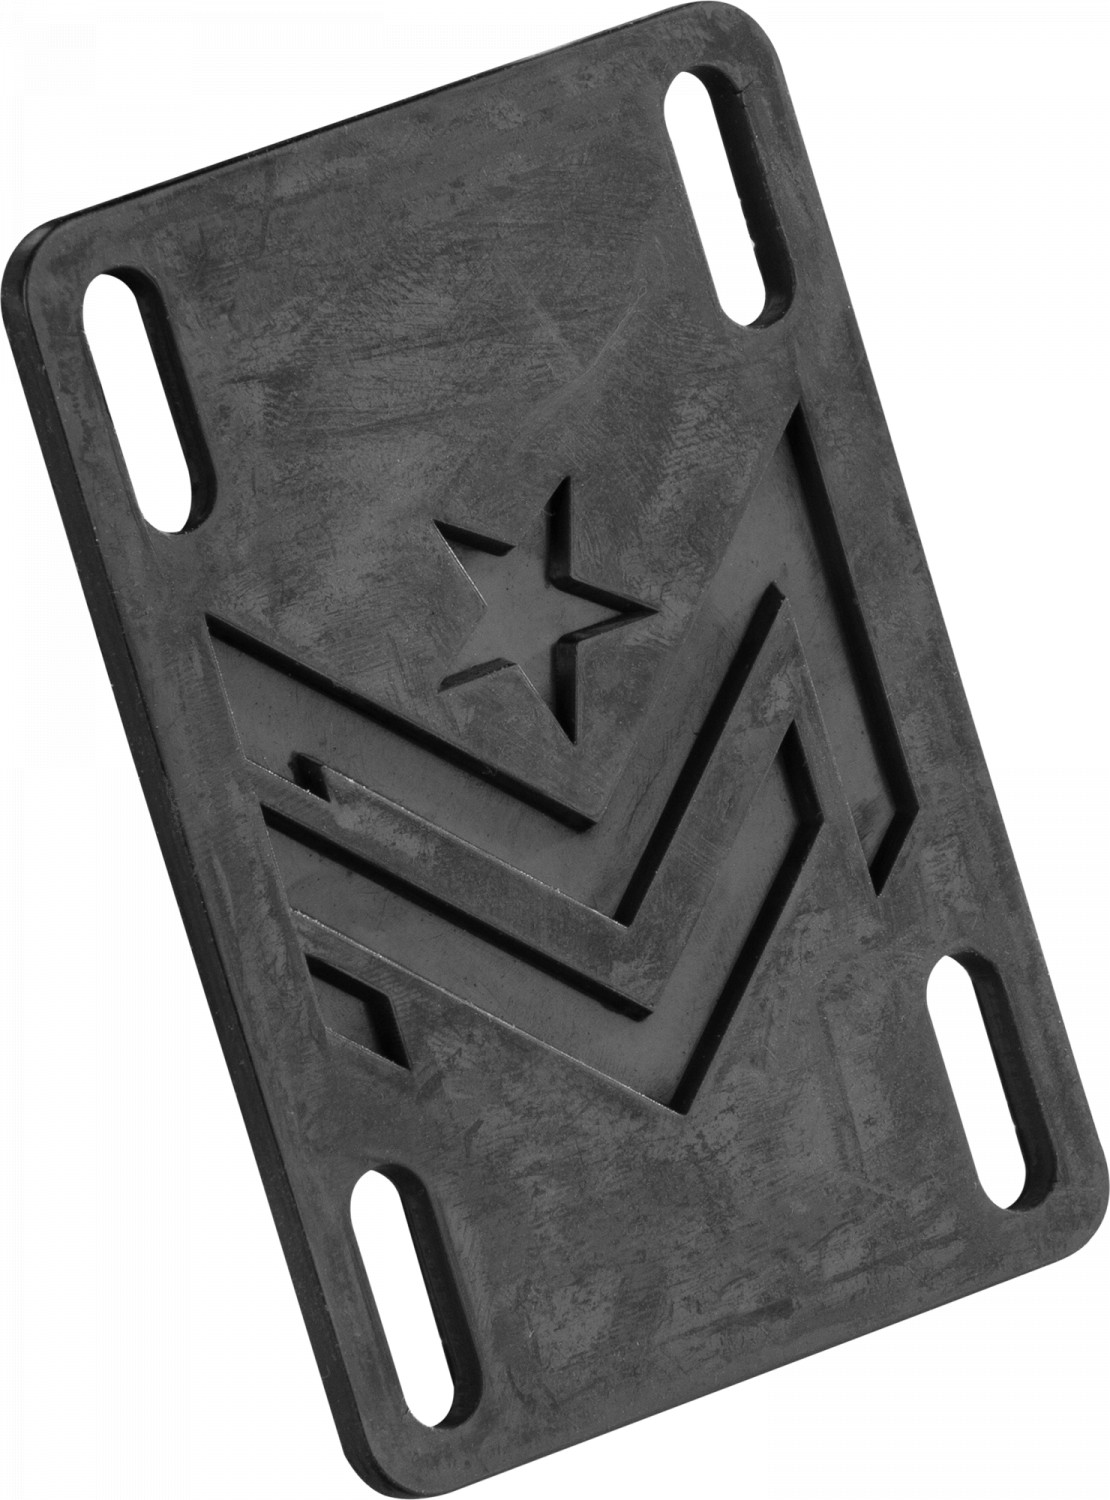 Подкладки для скейтборда Mini-logo Riser Pad Rigid 2pk купить в Boardshop №1